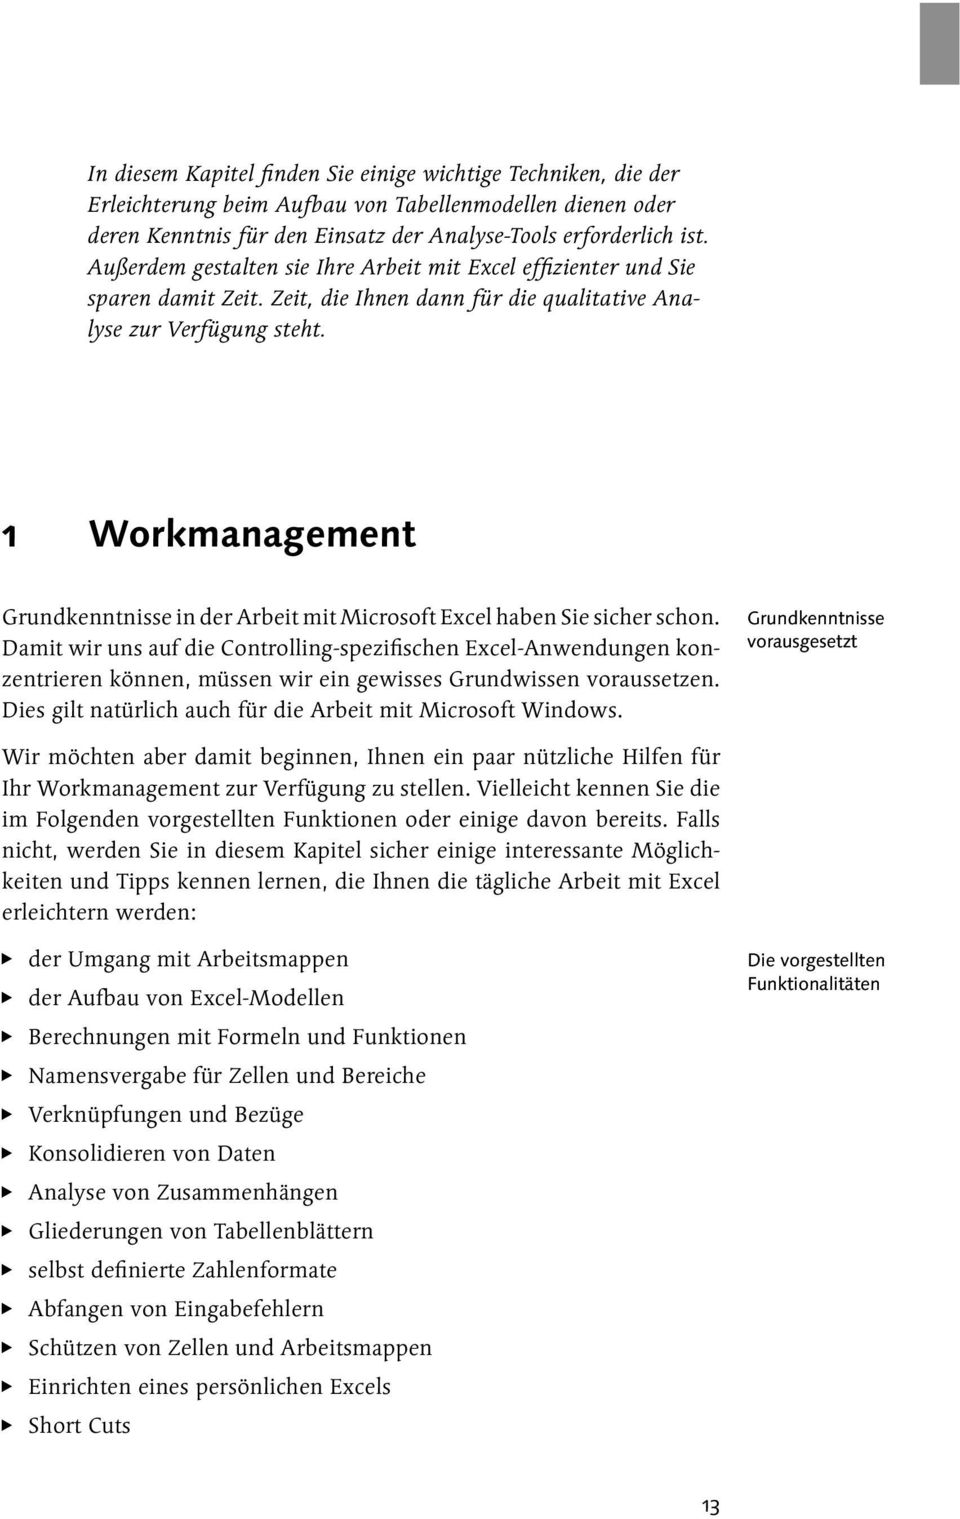 1 Workmanagement Grundkenntnisse in der Arbeit mit Microsoft Excel haben Sie sicher schon.